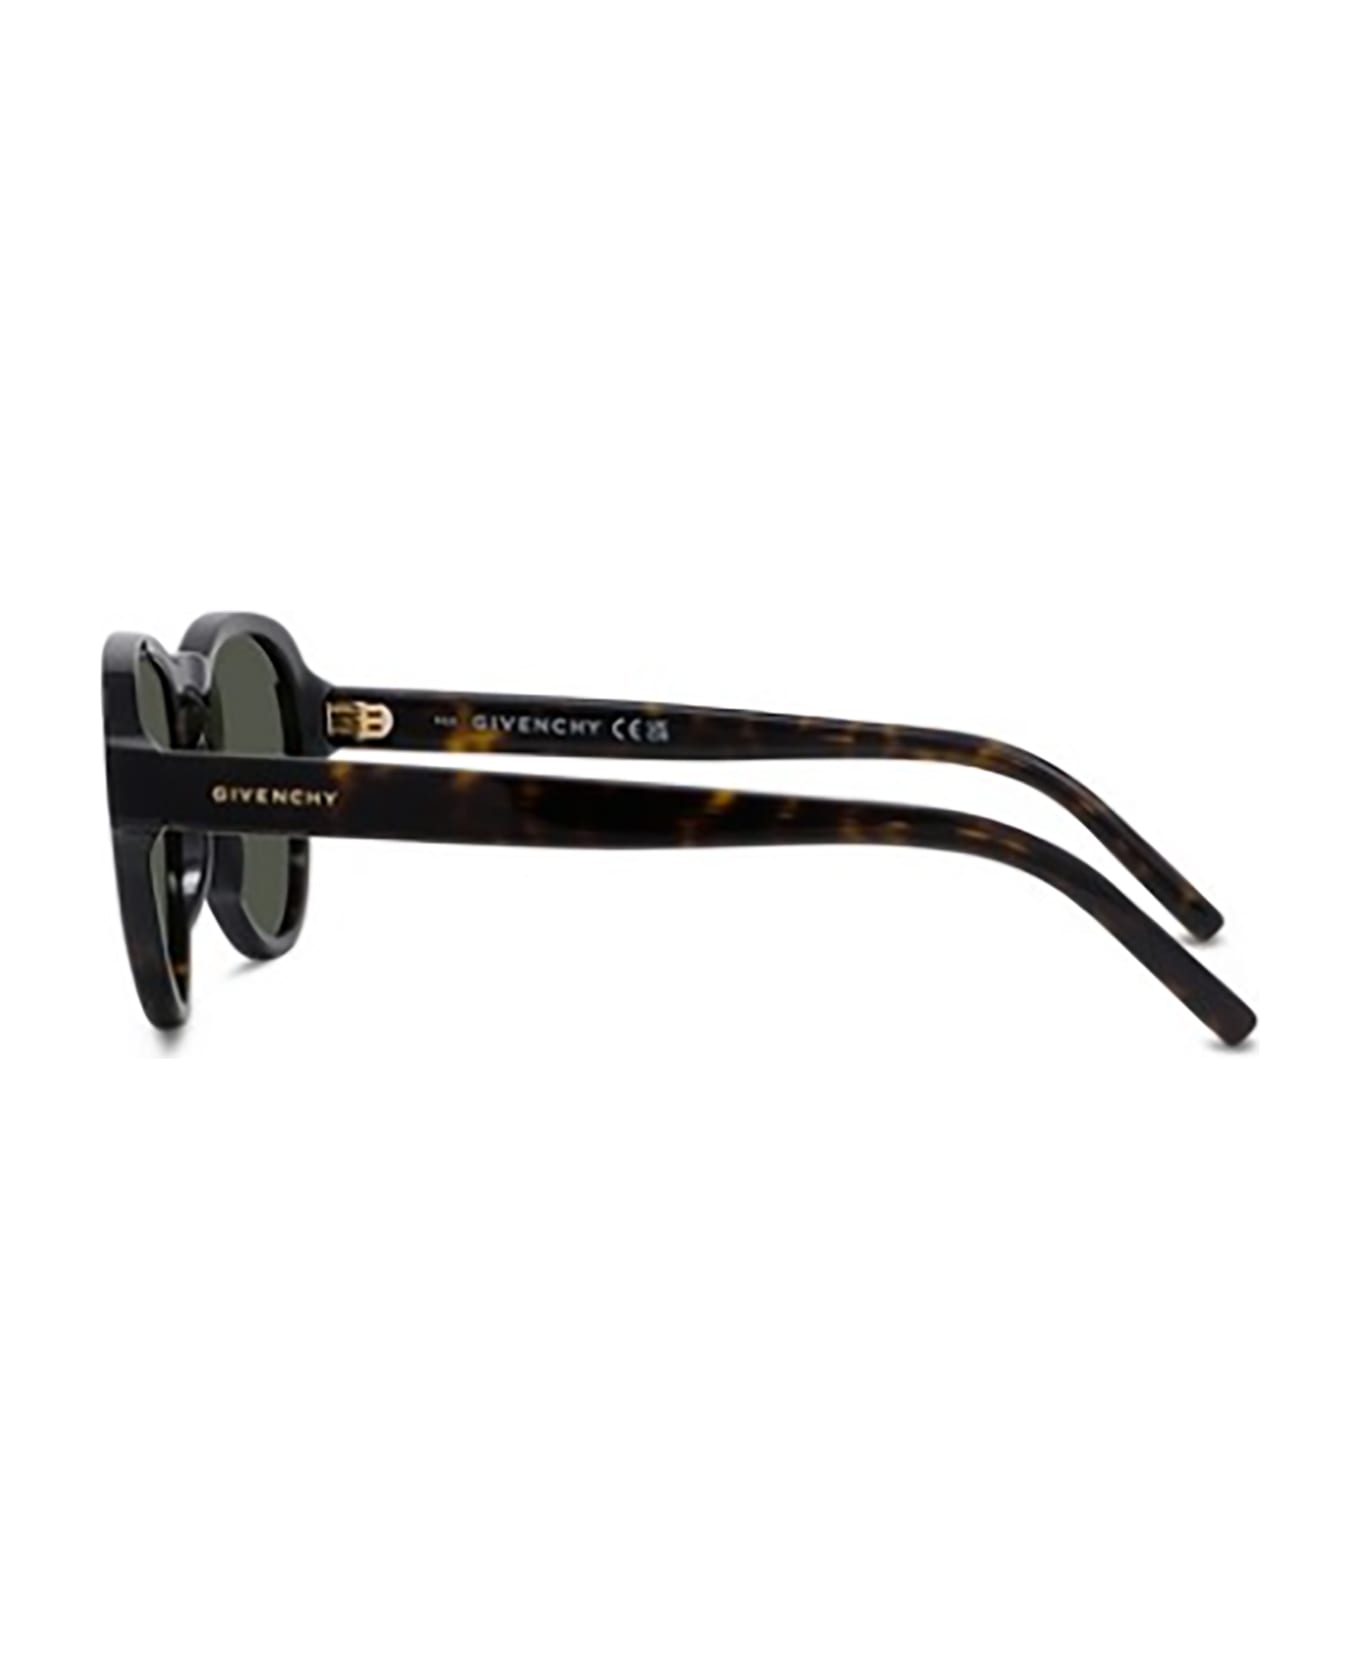 Givenchy Eyewear GV40085I Sunglasses - N サングラス